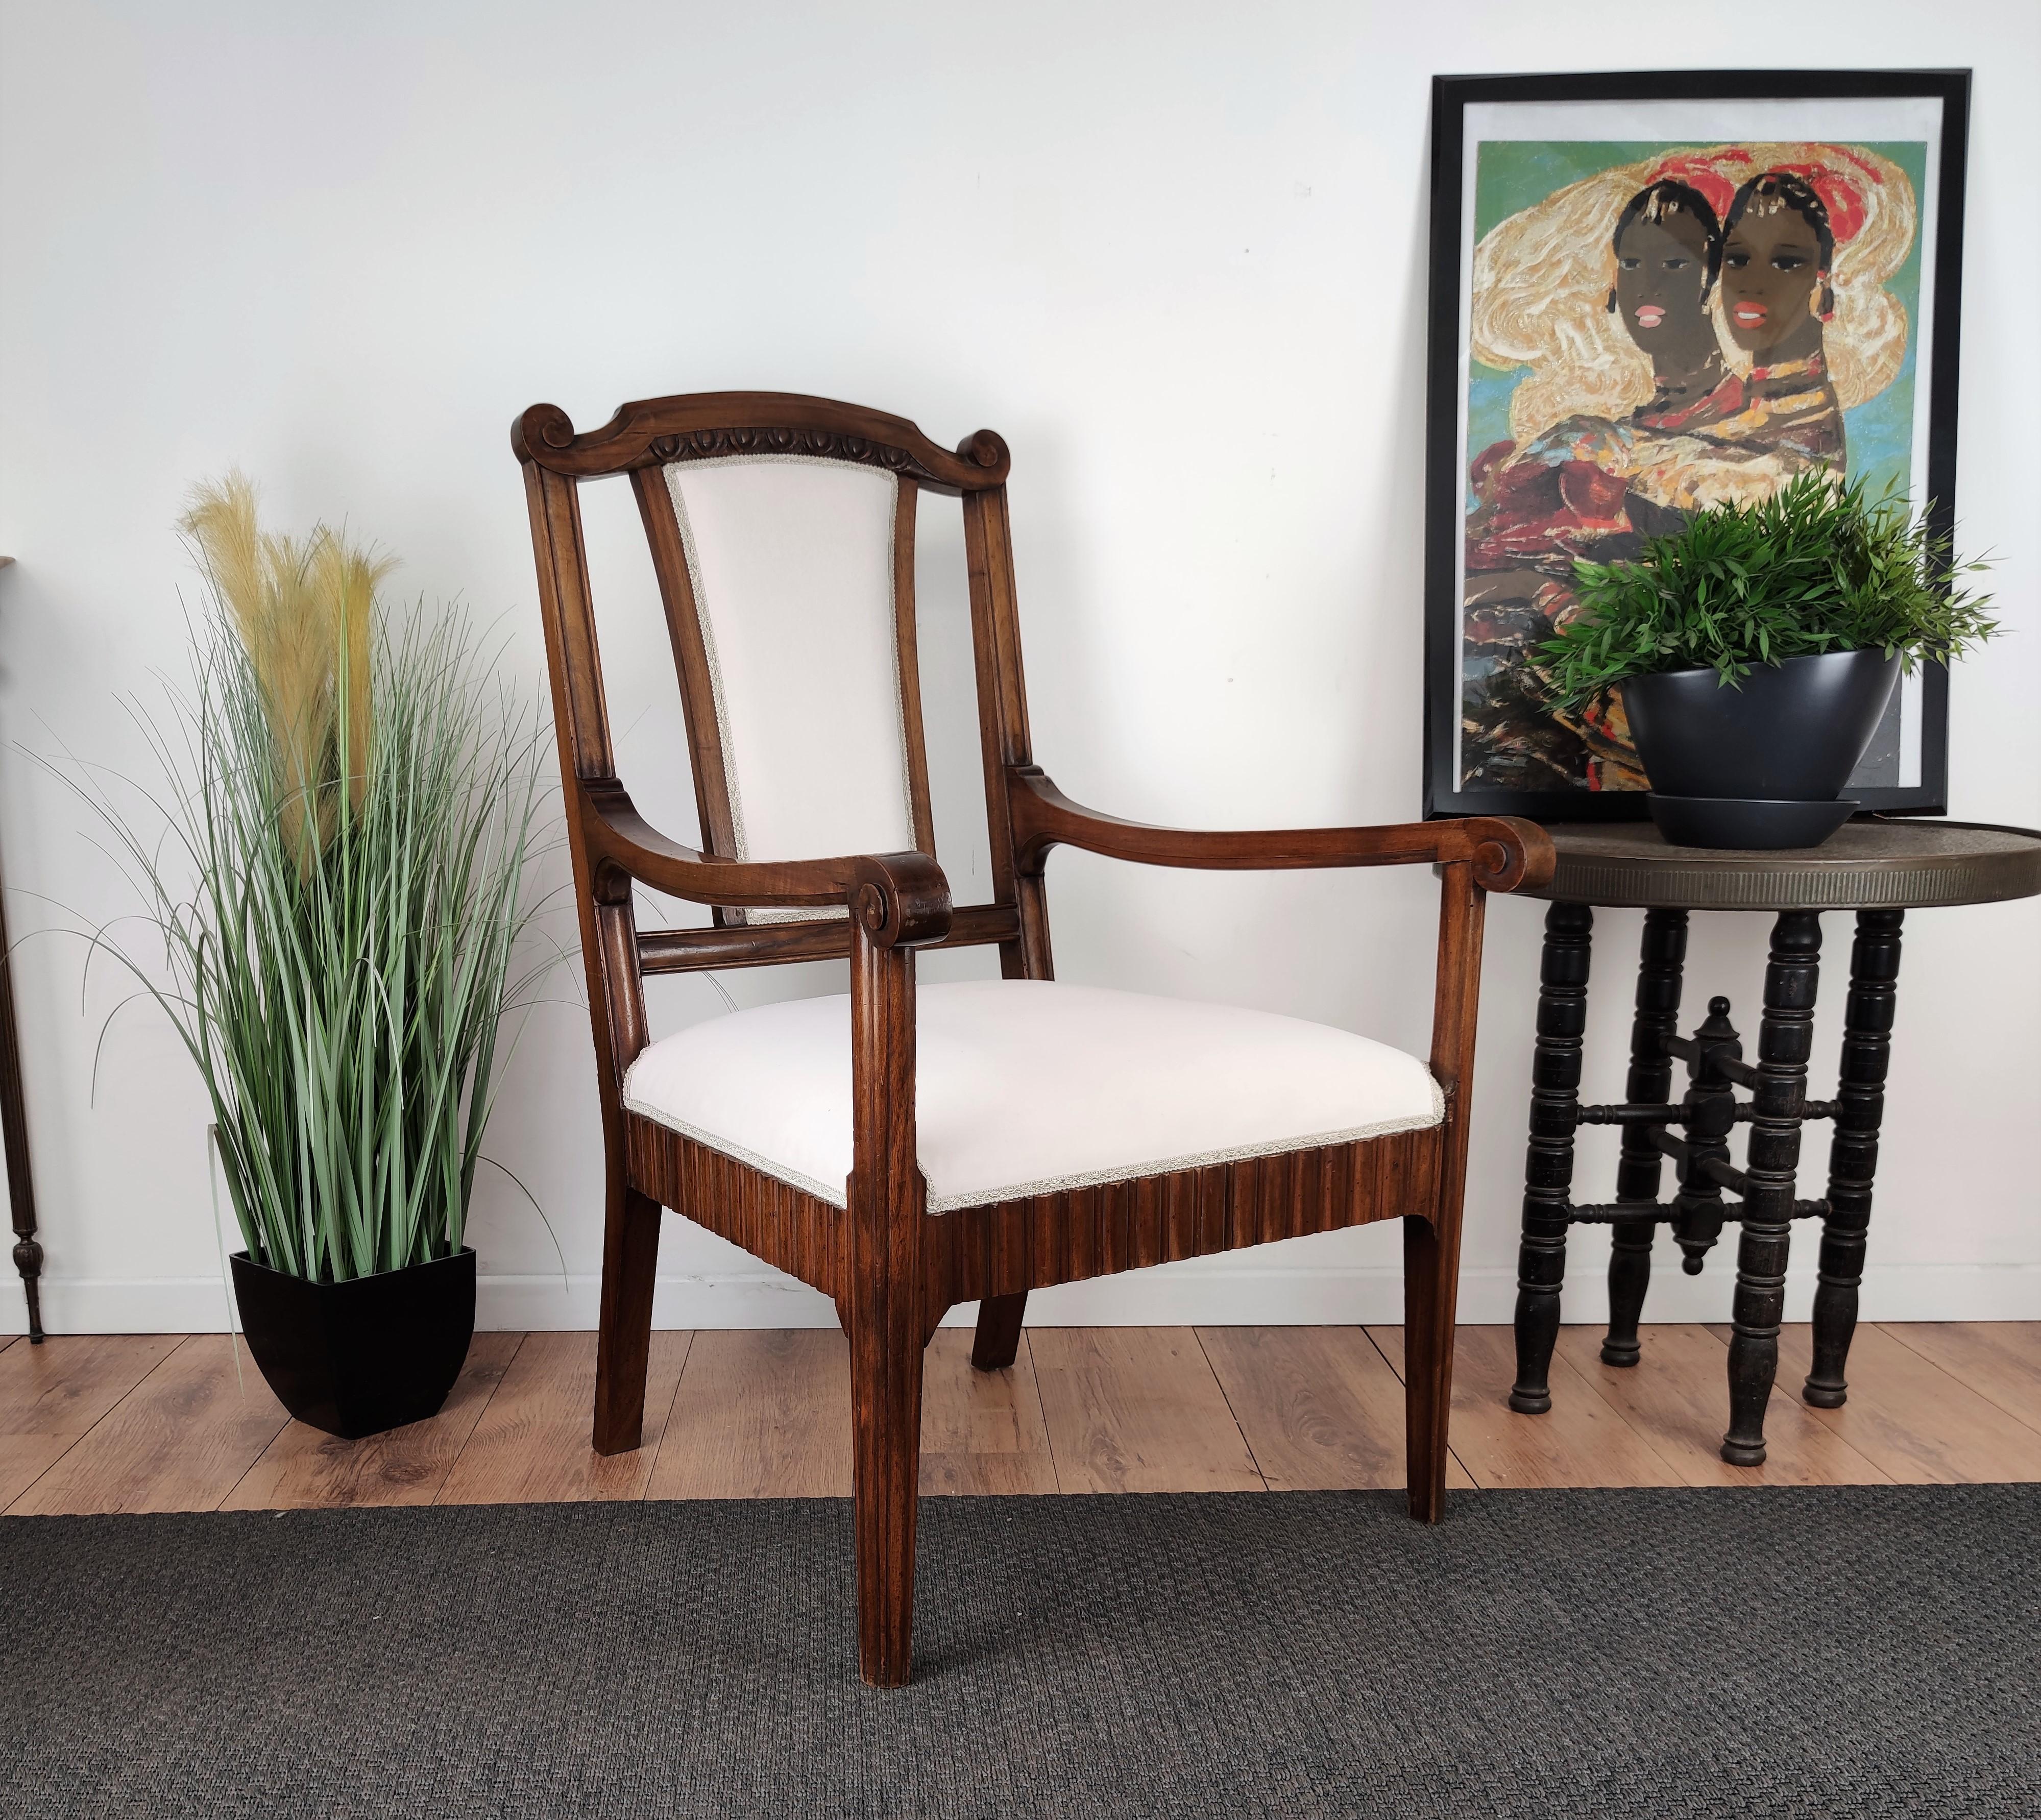 Magnifique fauteuil italien en bois de noyer sculpté, en bon état et entièrement recouvert de tissu blanc. La forme est très élégante et la couleur du bois met en valeur les décors détaillés des pieds, des côtés et du dossier.
 